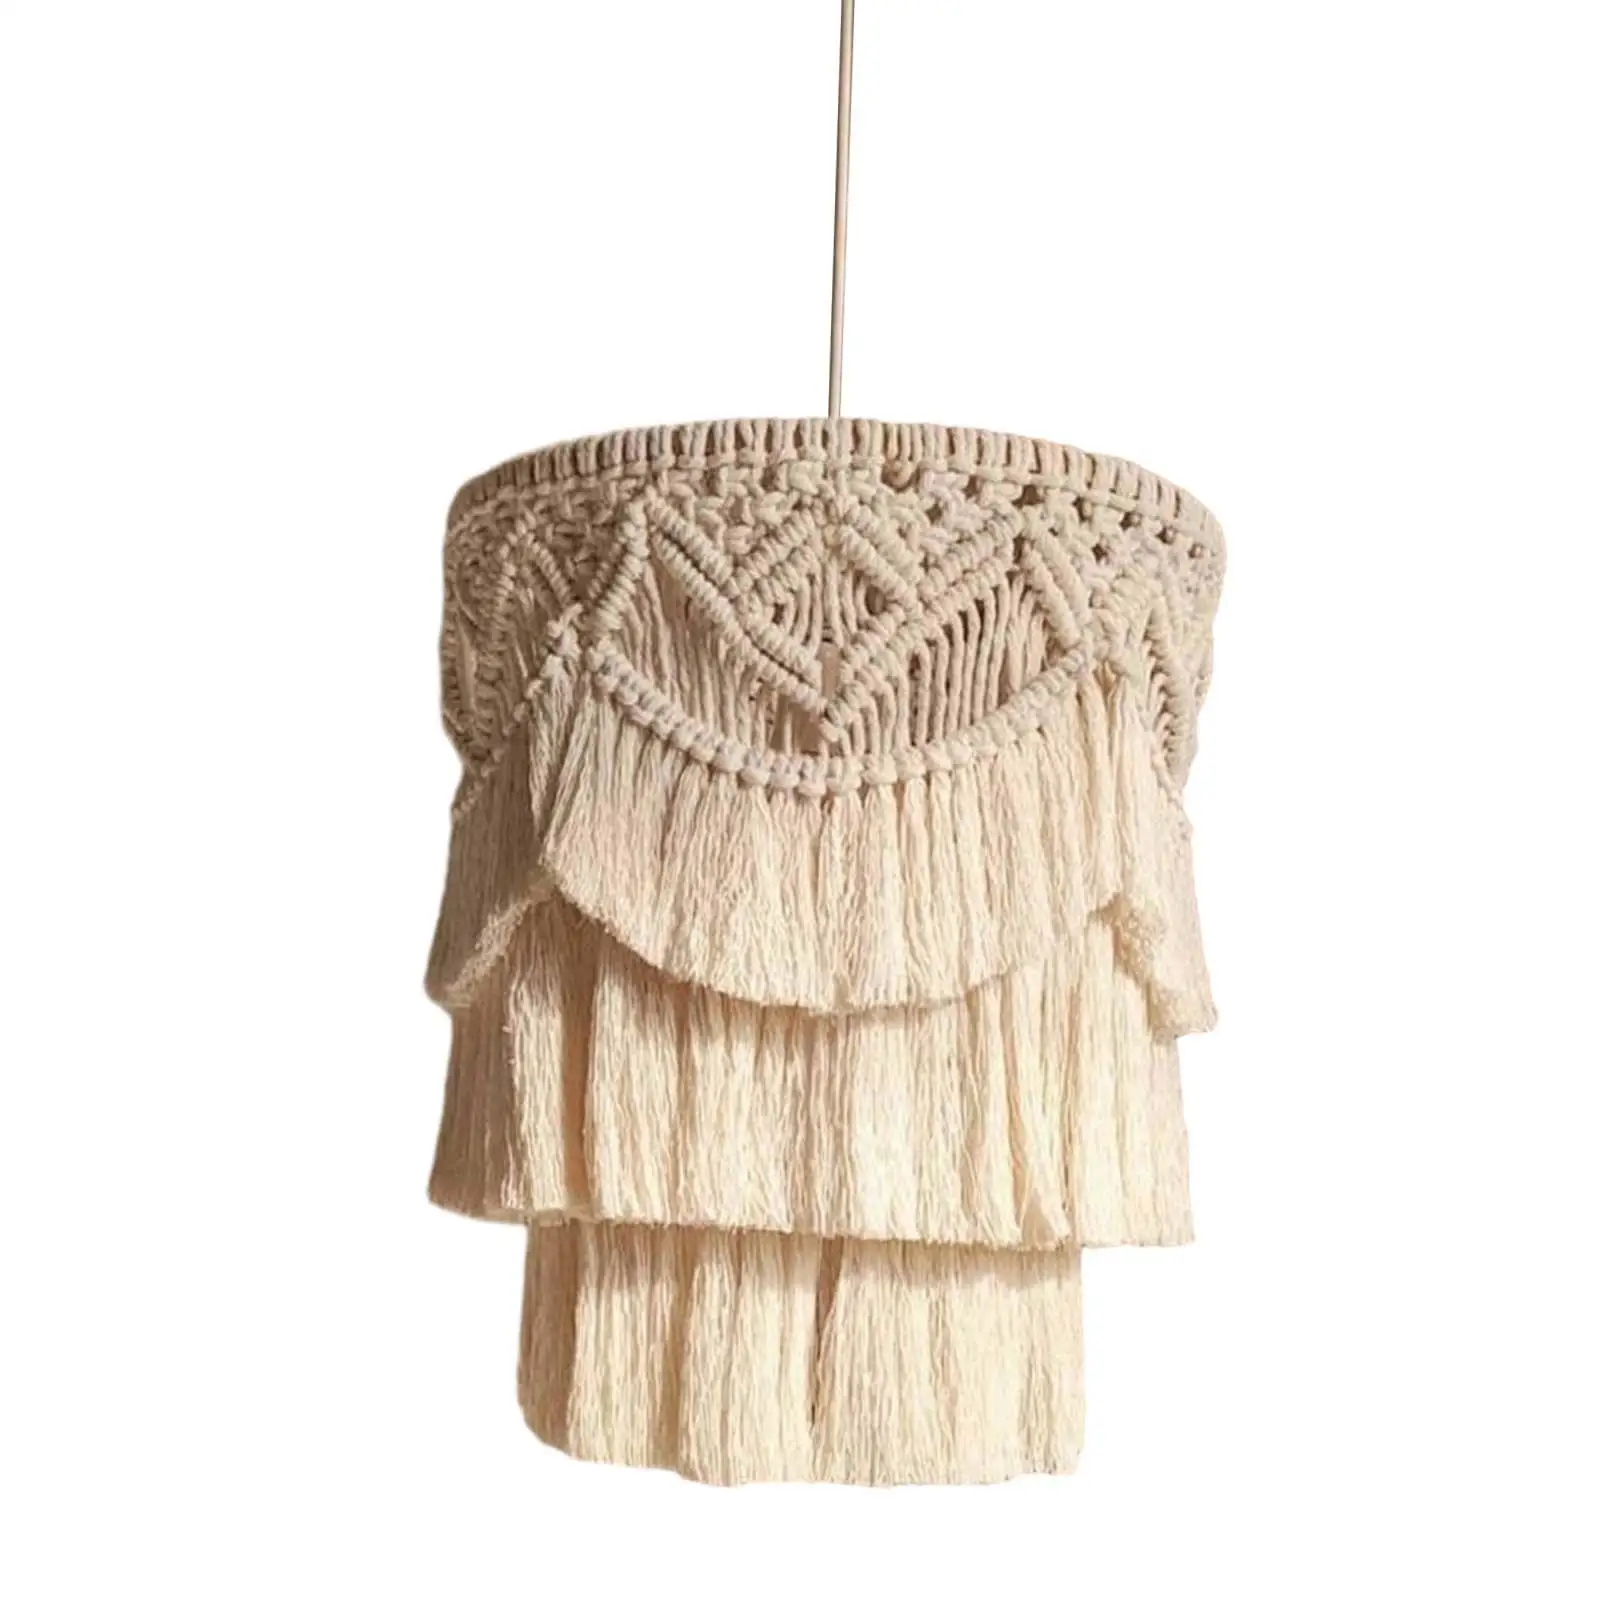 Macrame Lamp Shade Weaving Boho Hanging Pendant Light Cover for Dorm Hotel